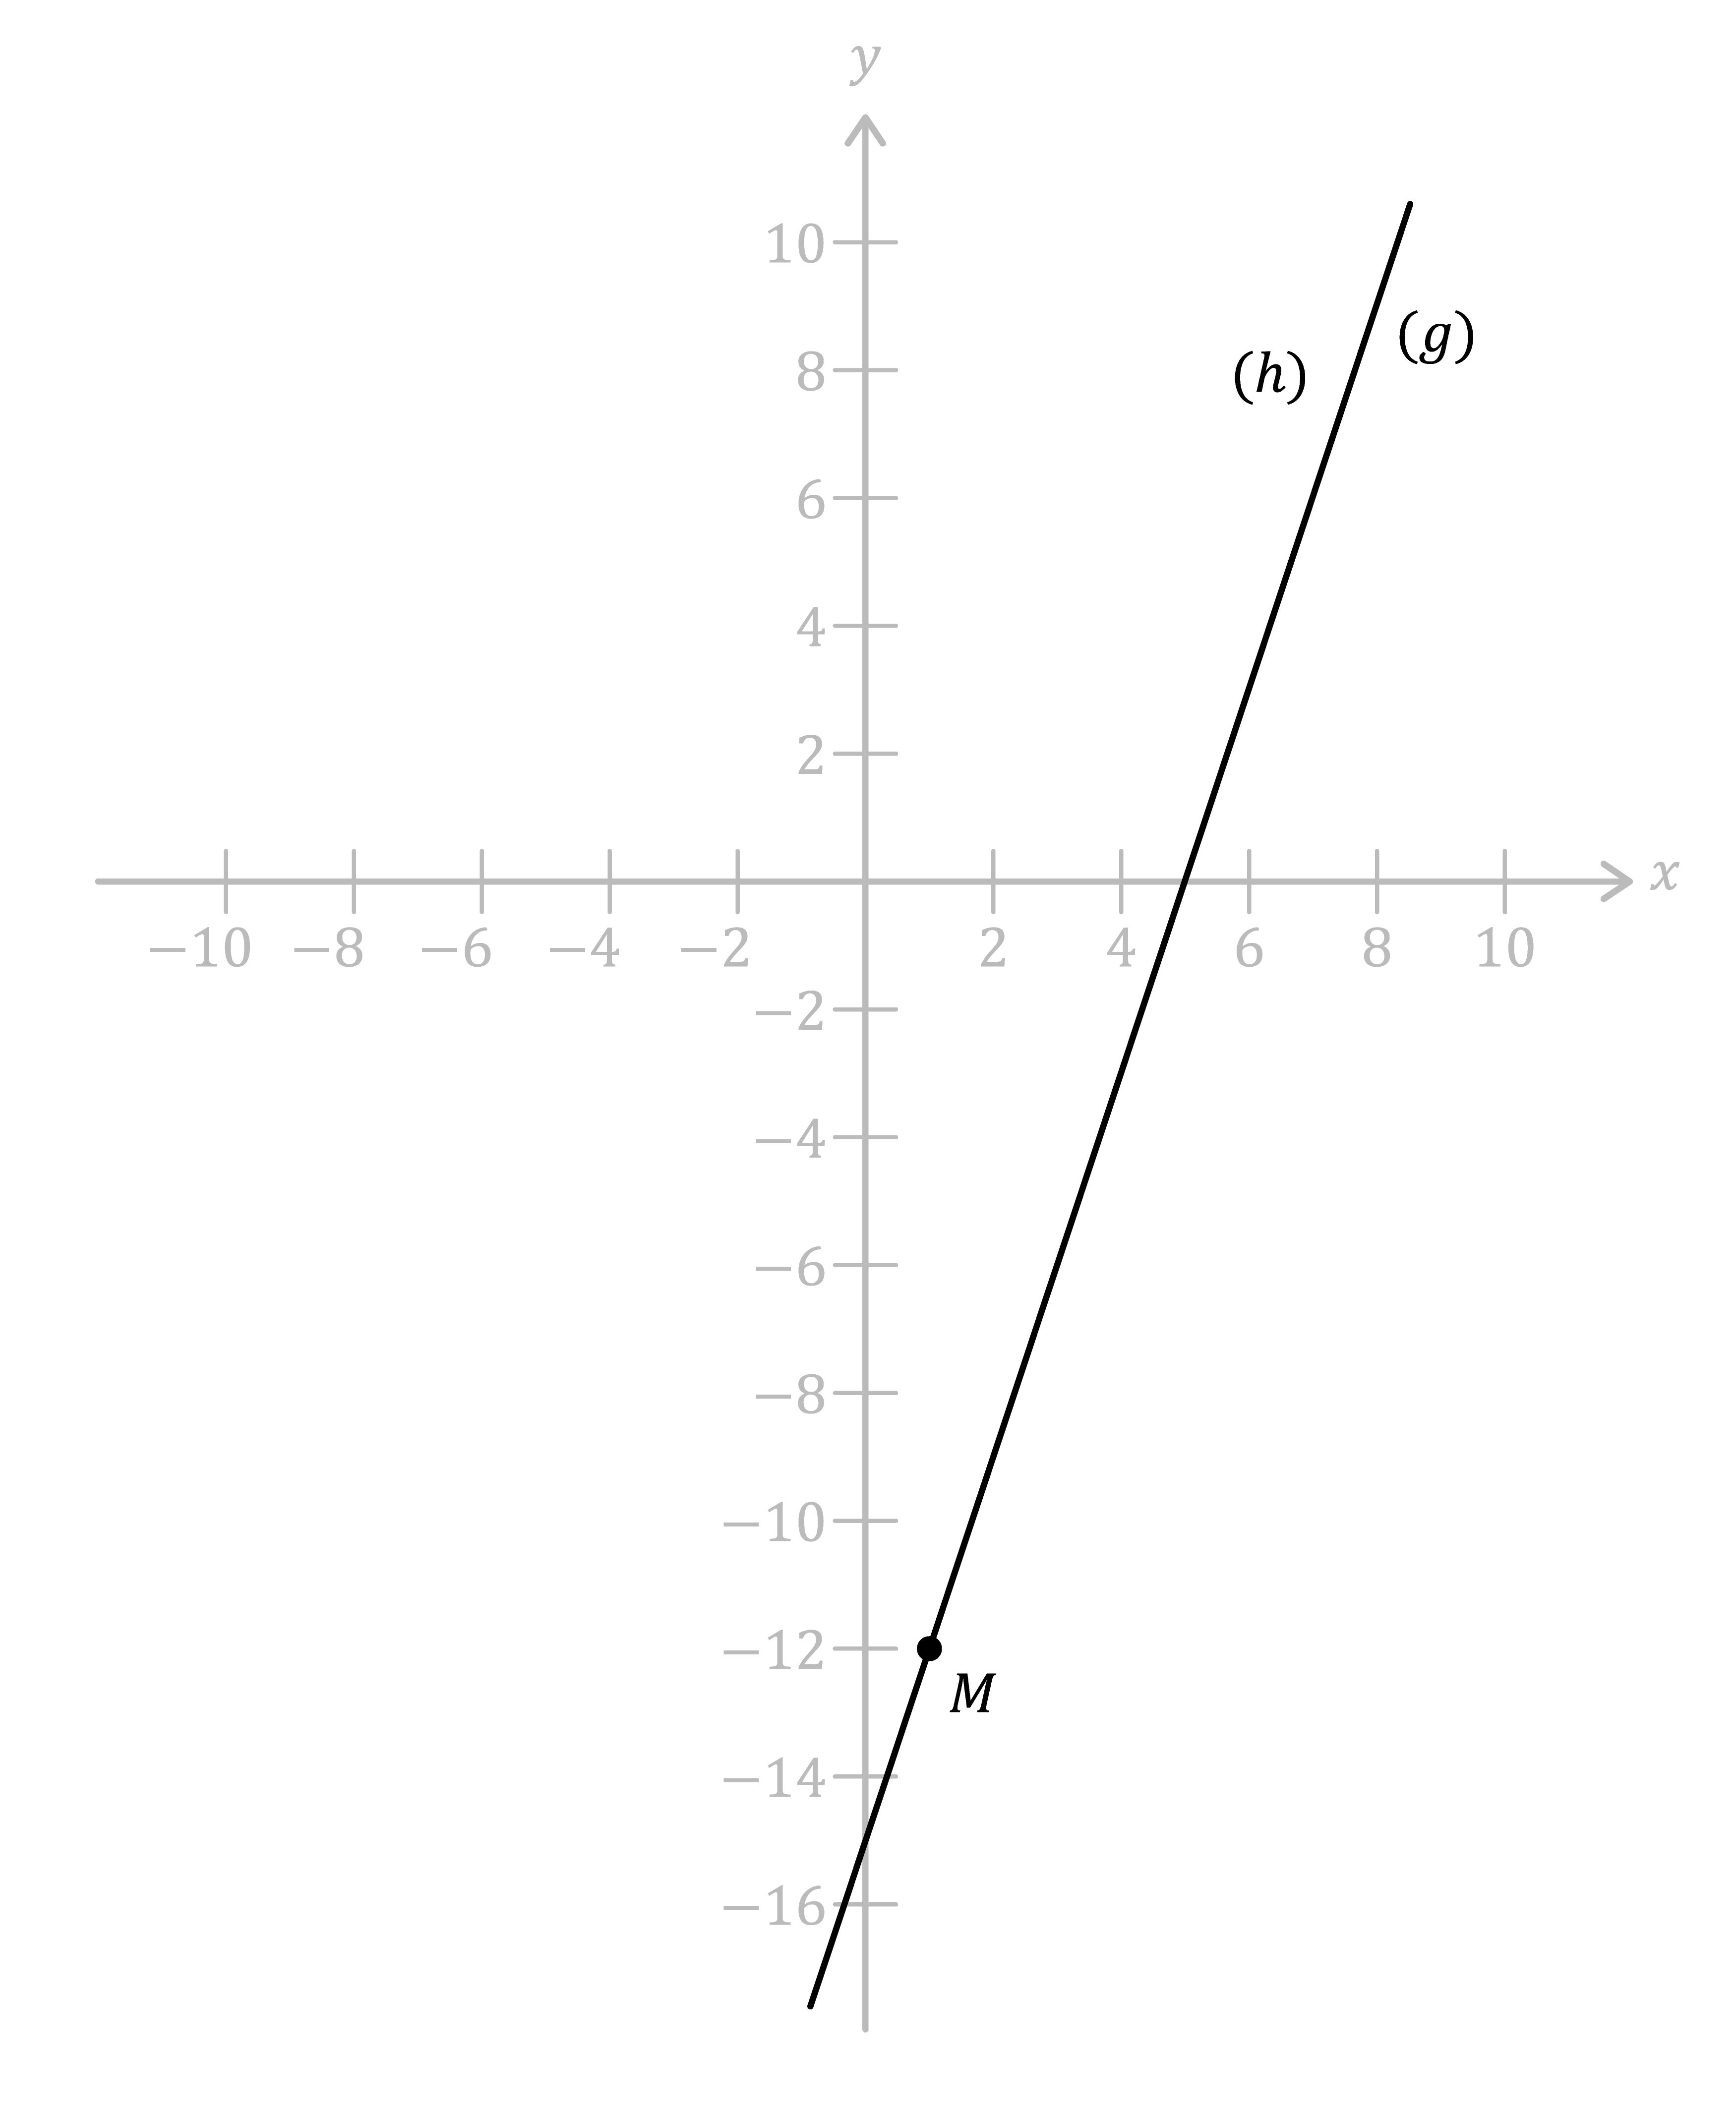 Matemáticas; Elementos geométricos; 1. ESO; Punto, recta y segmento en el plano 2D